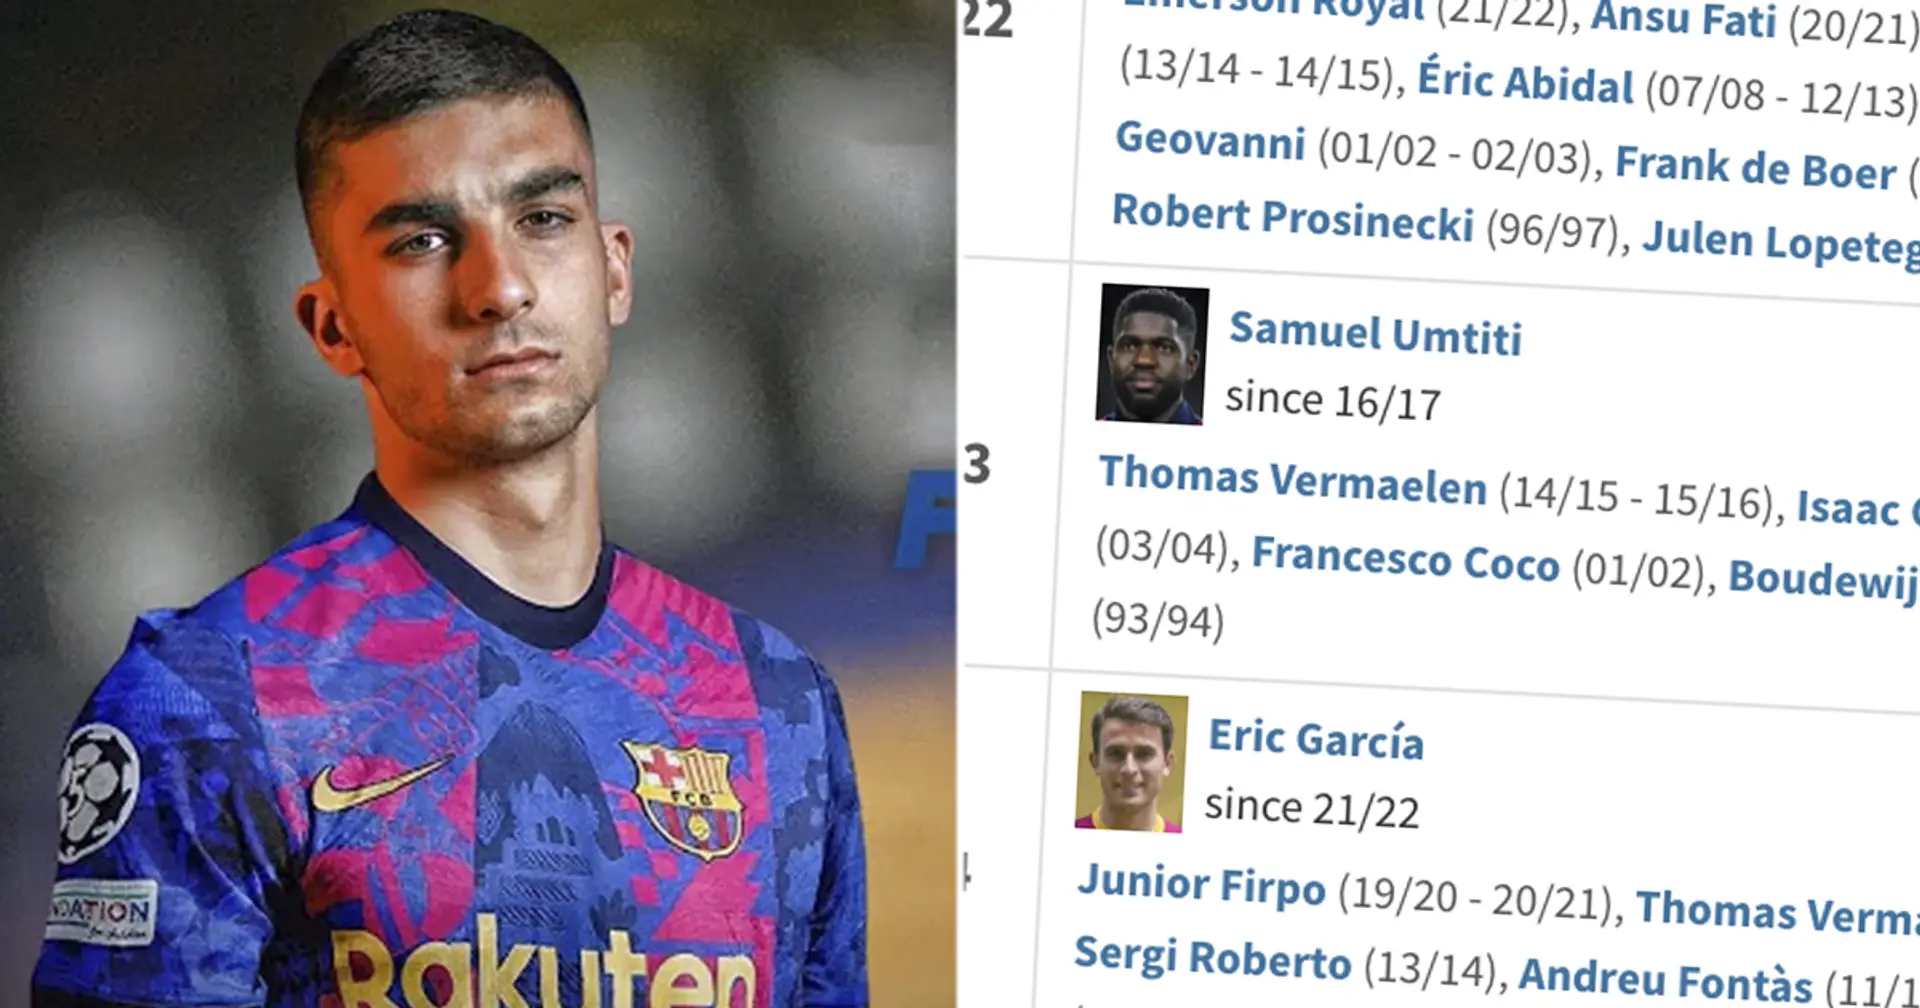 Le numéro de maillot de Ferran Torres au Barça révélé par des journalistes